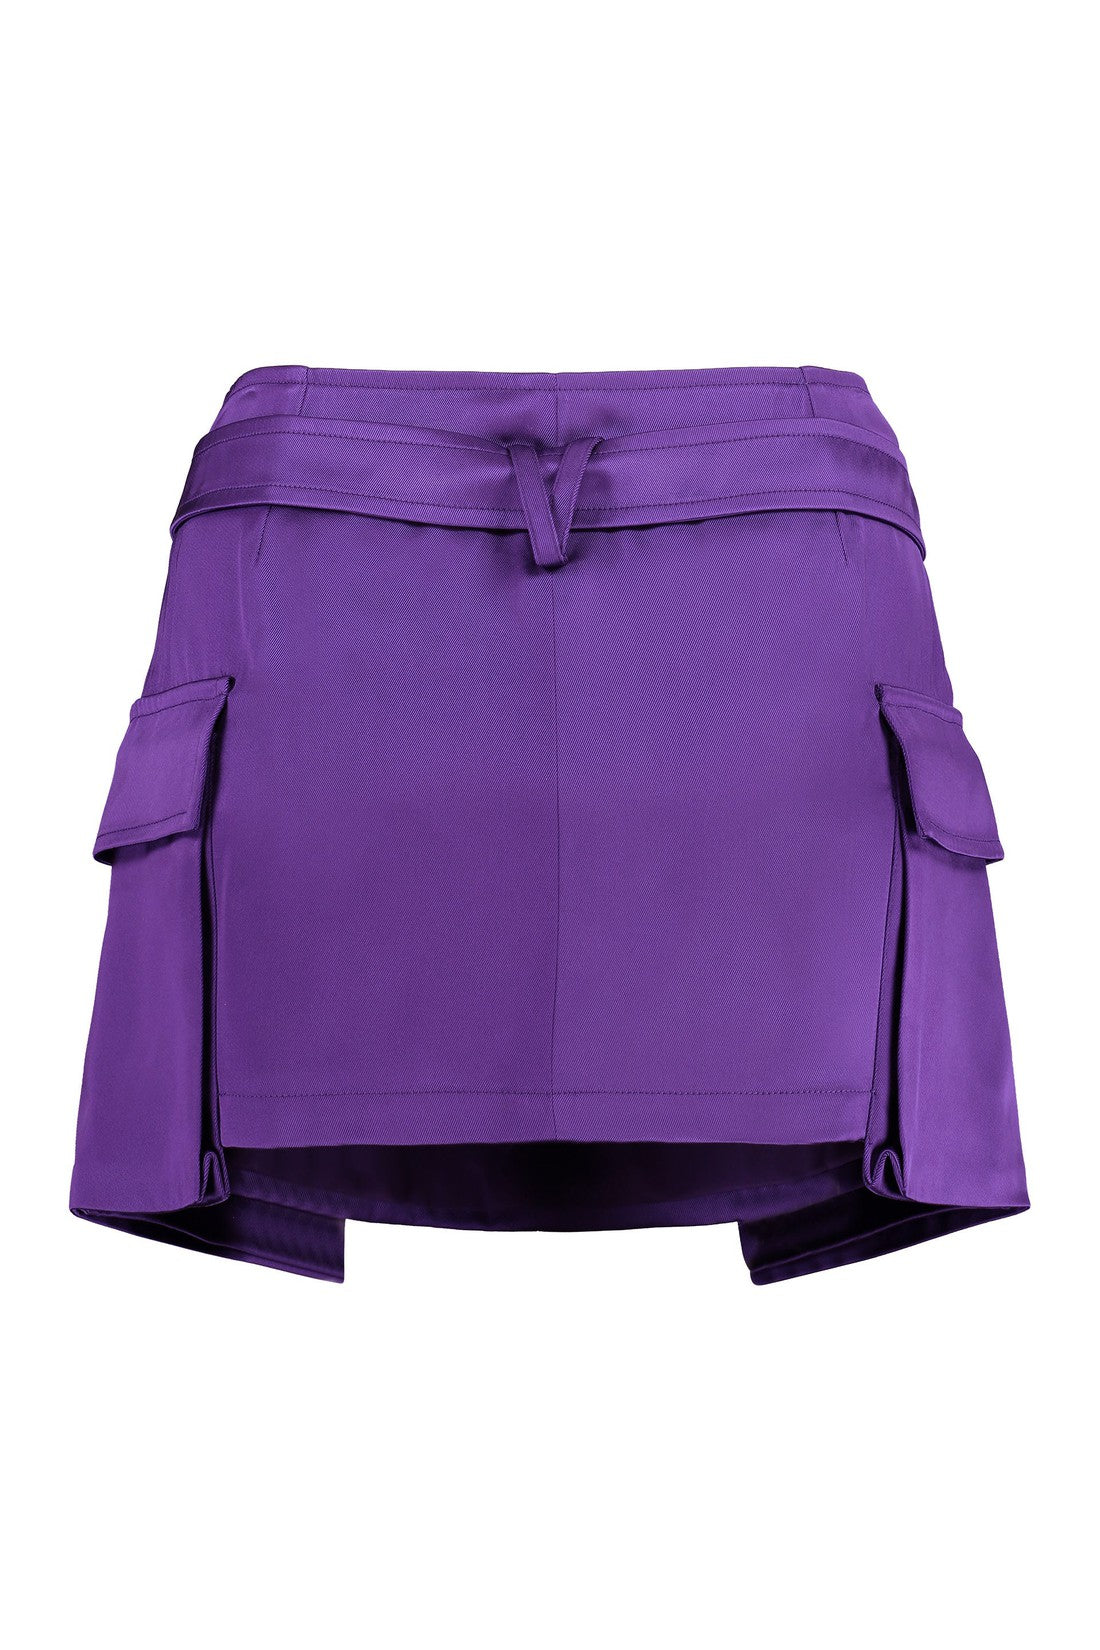 Versace-OUTLET-SALE-Cargo mini skirt-ARCHIVIST